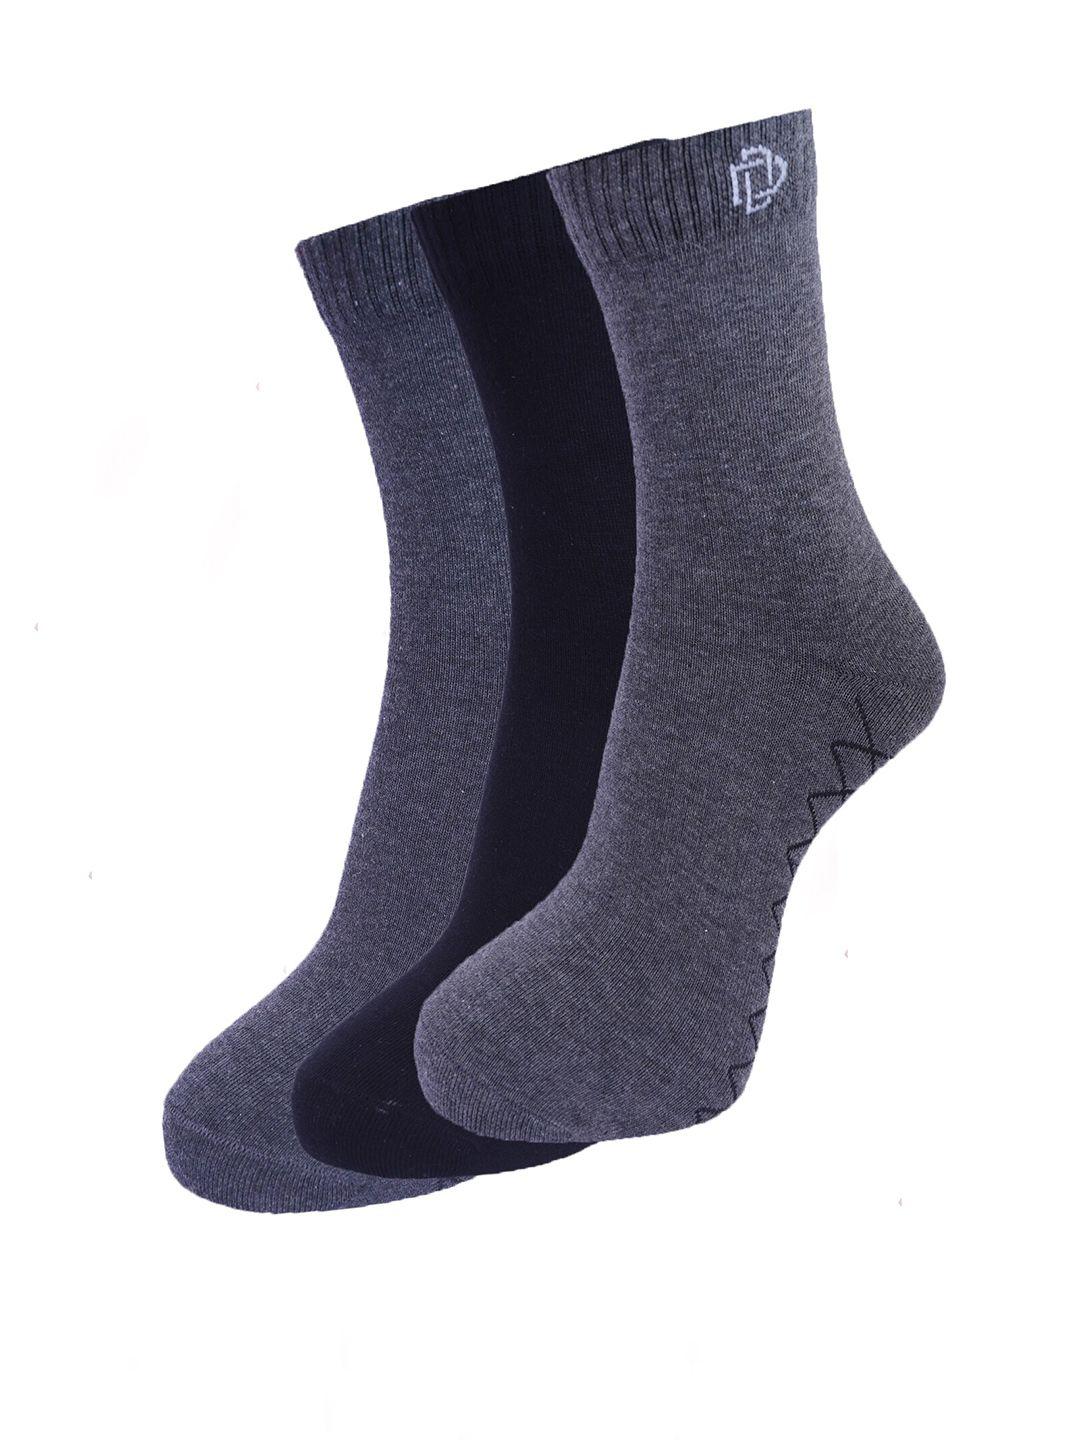 dollar-socks-men-pack-of-3-assorted-cotton-ankle-length-socks